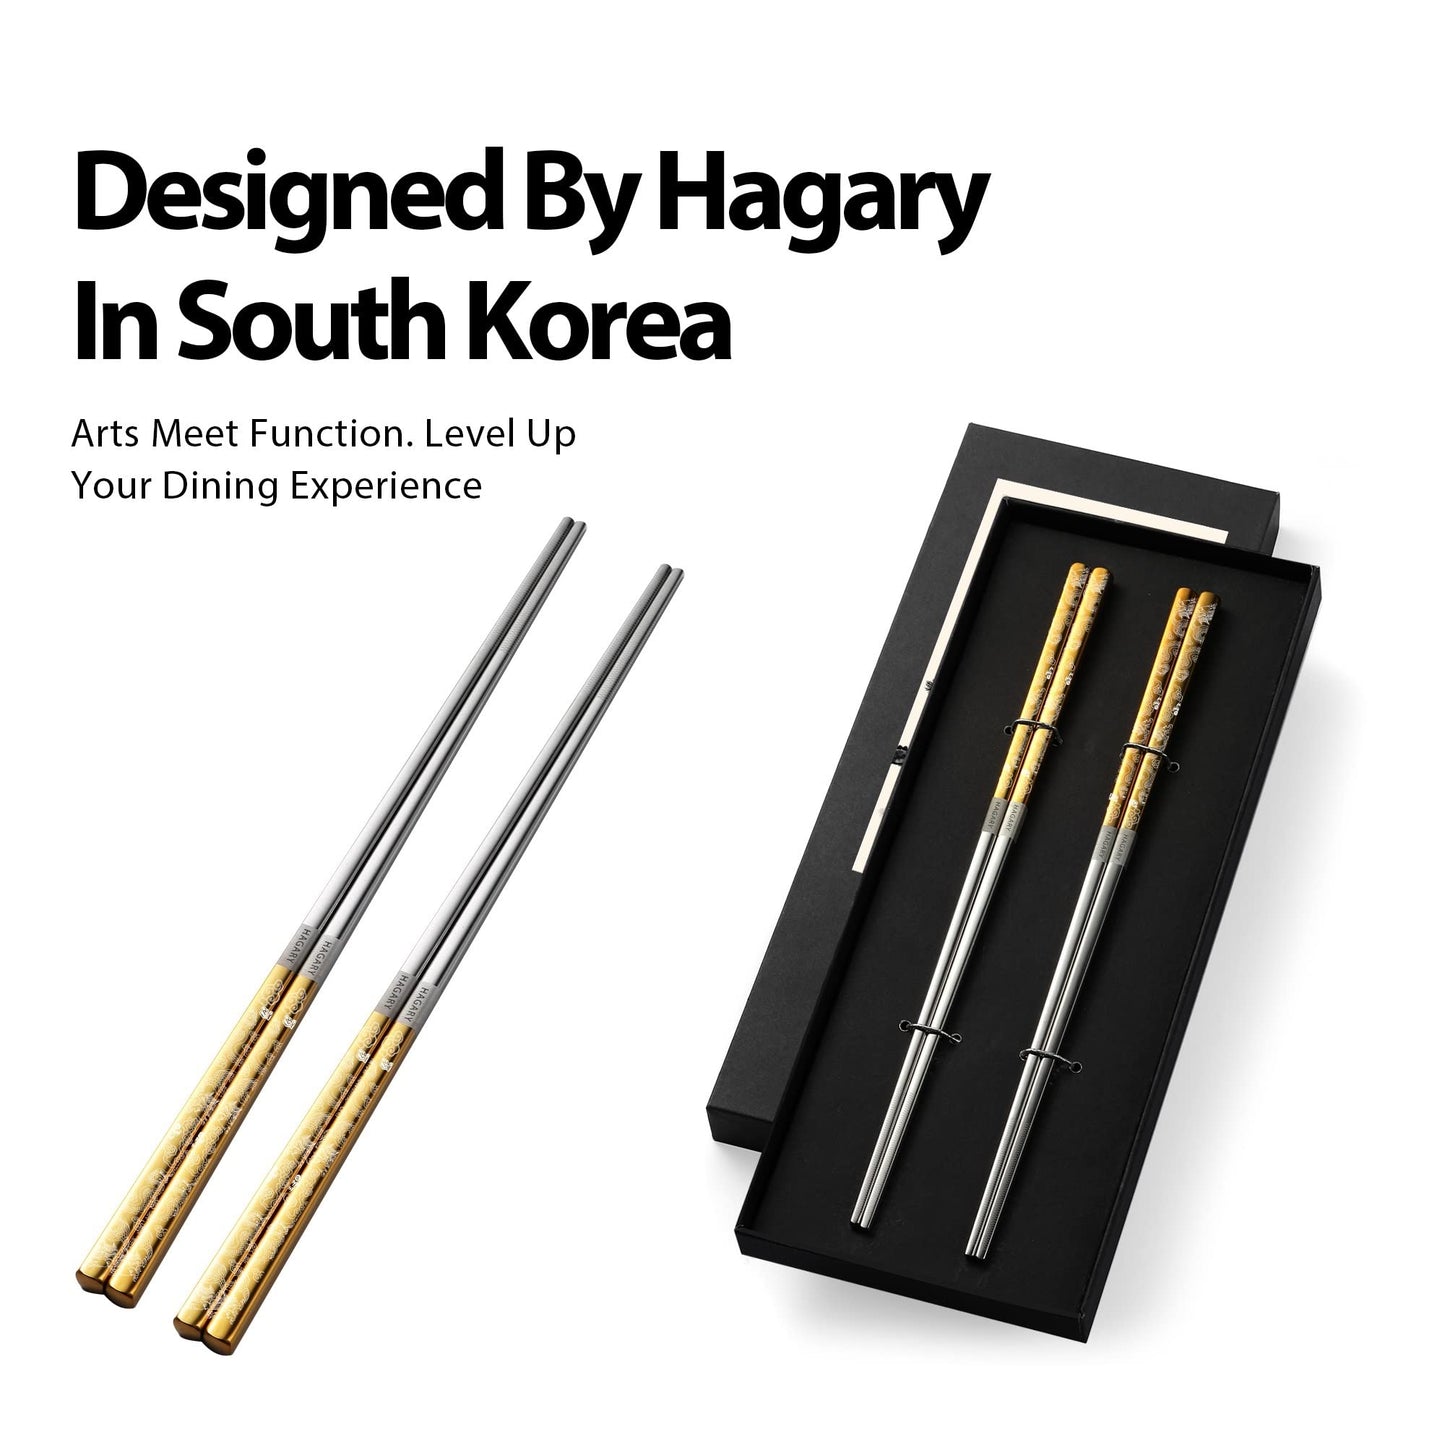 Dragon Metal Reusable Chopsticks Gold Color